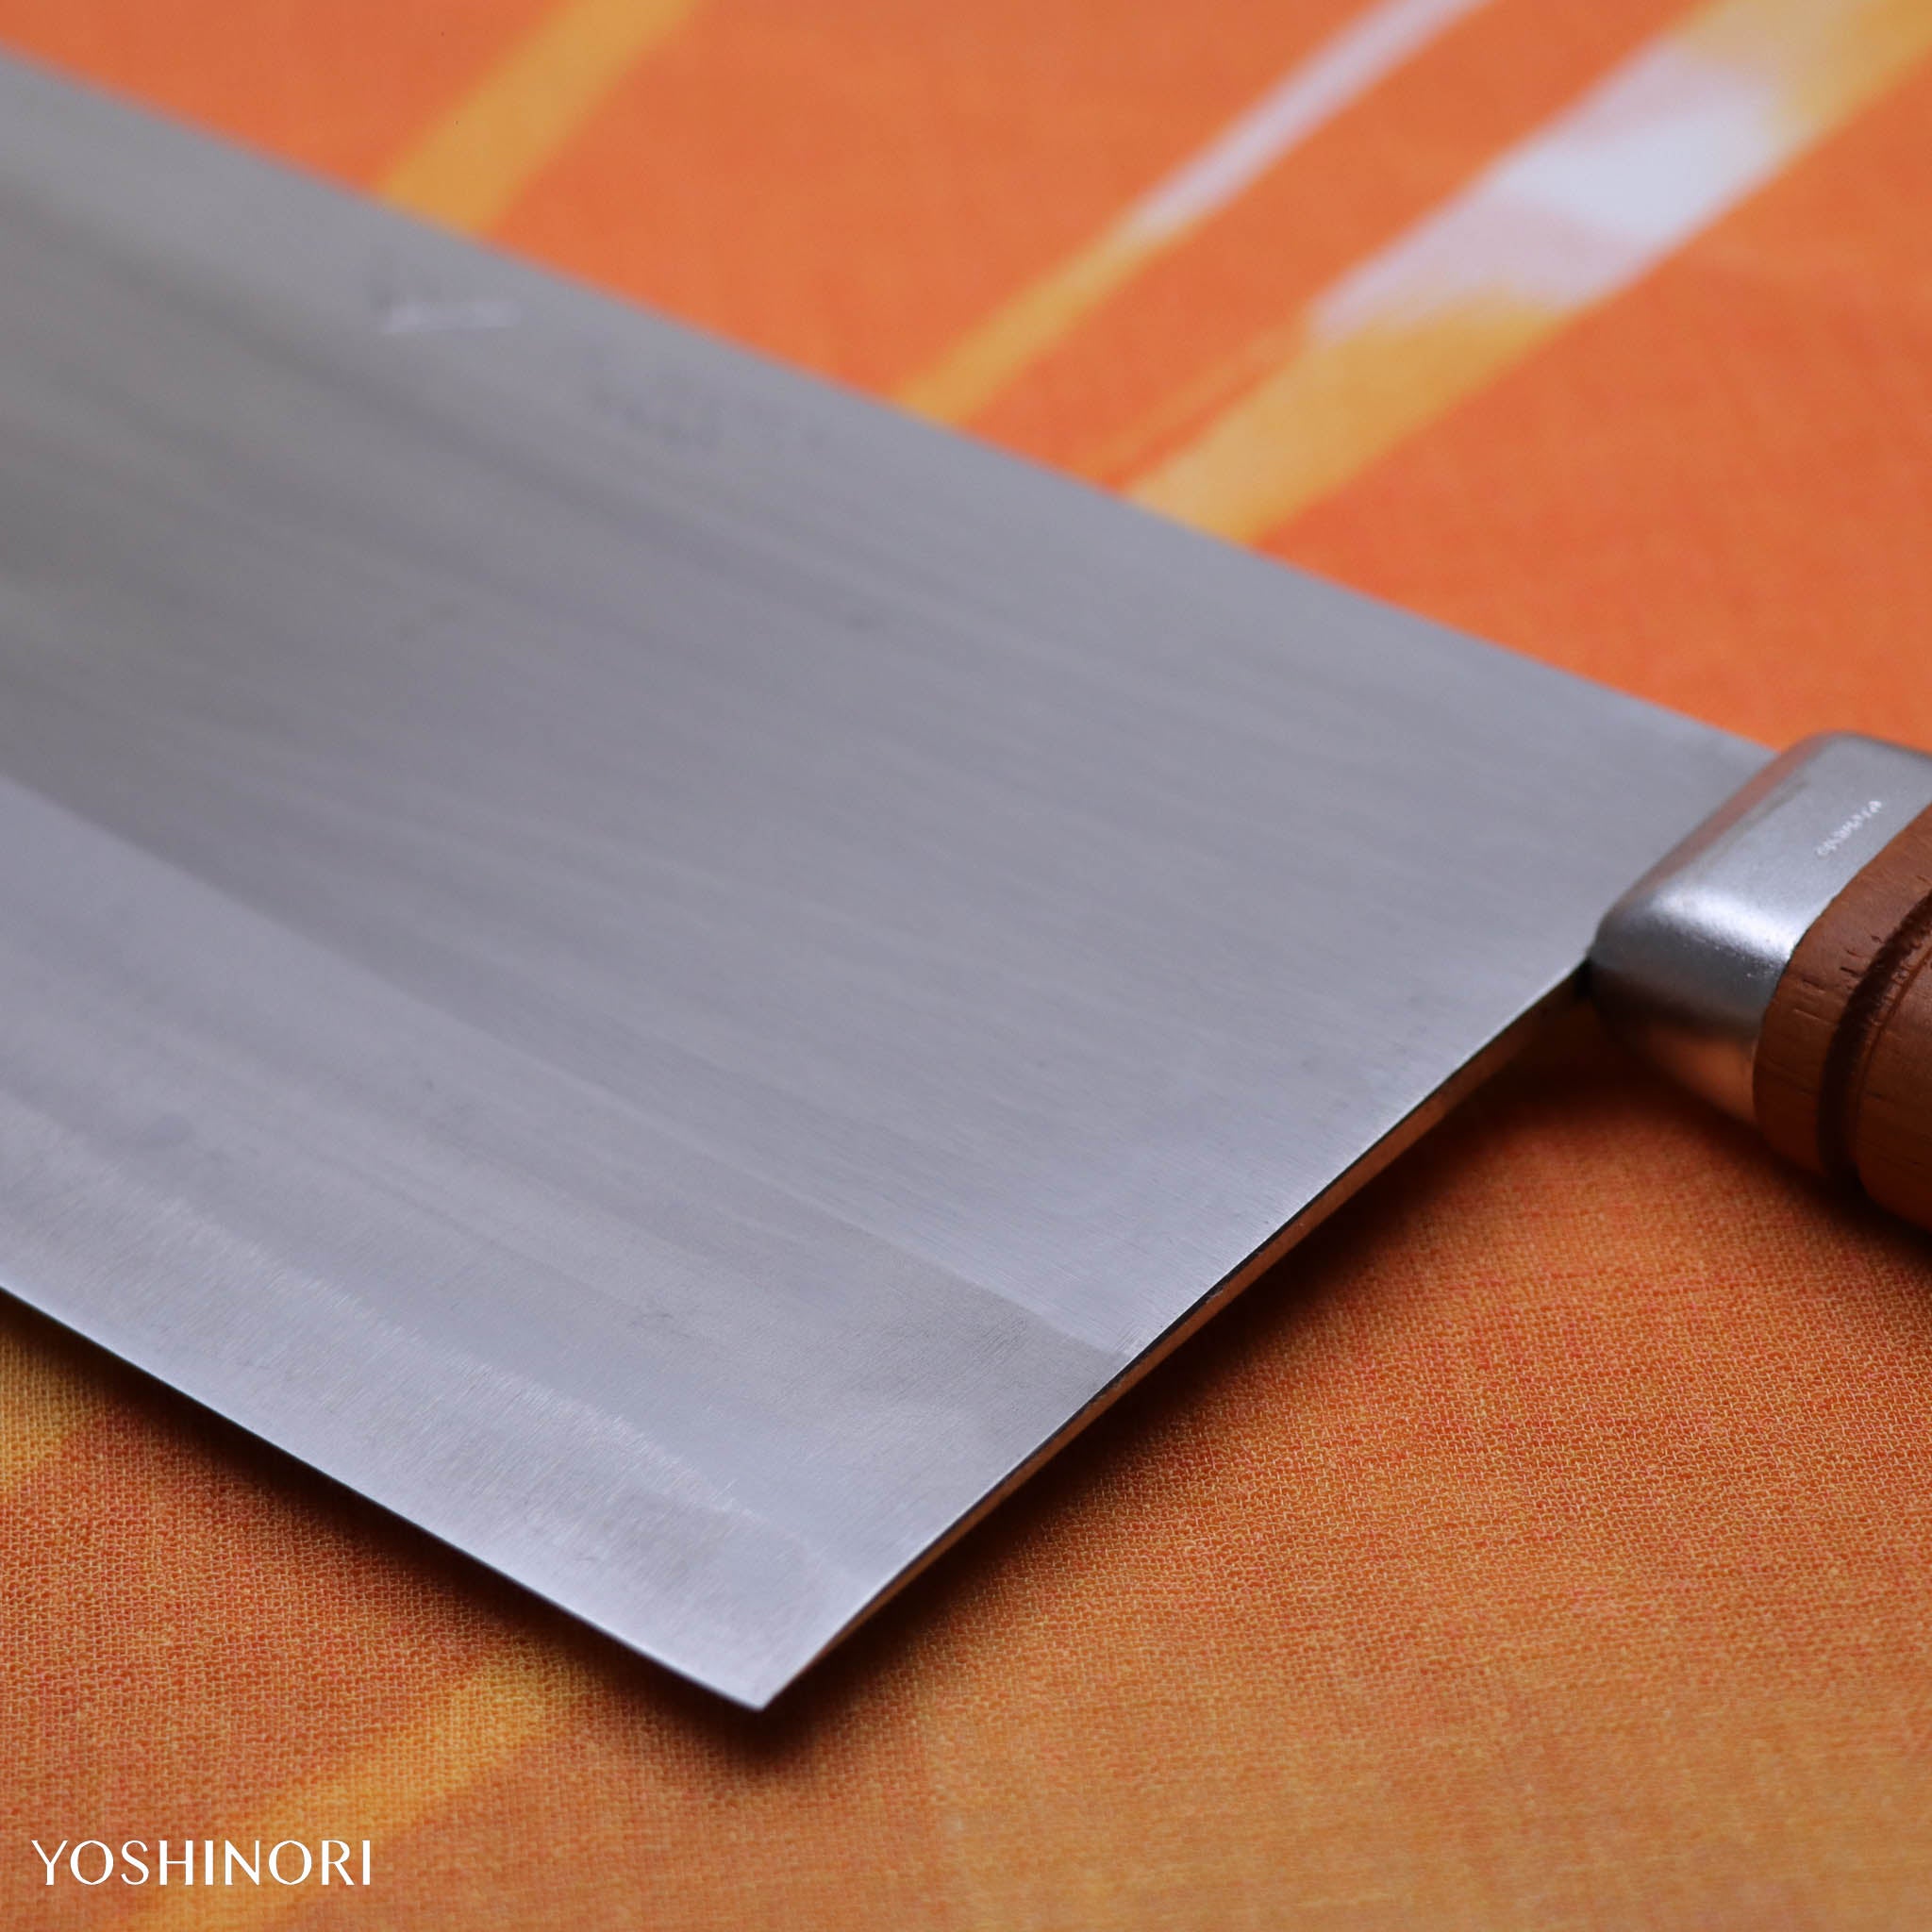 杉本 包丁 中華包丁 ６号 Japanese knife Sugimoto No.6 Chinese knife